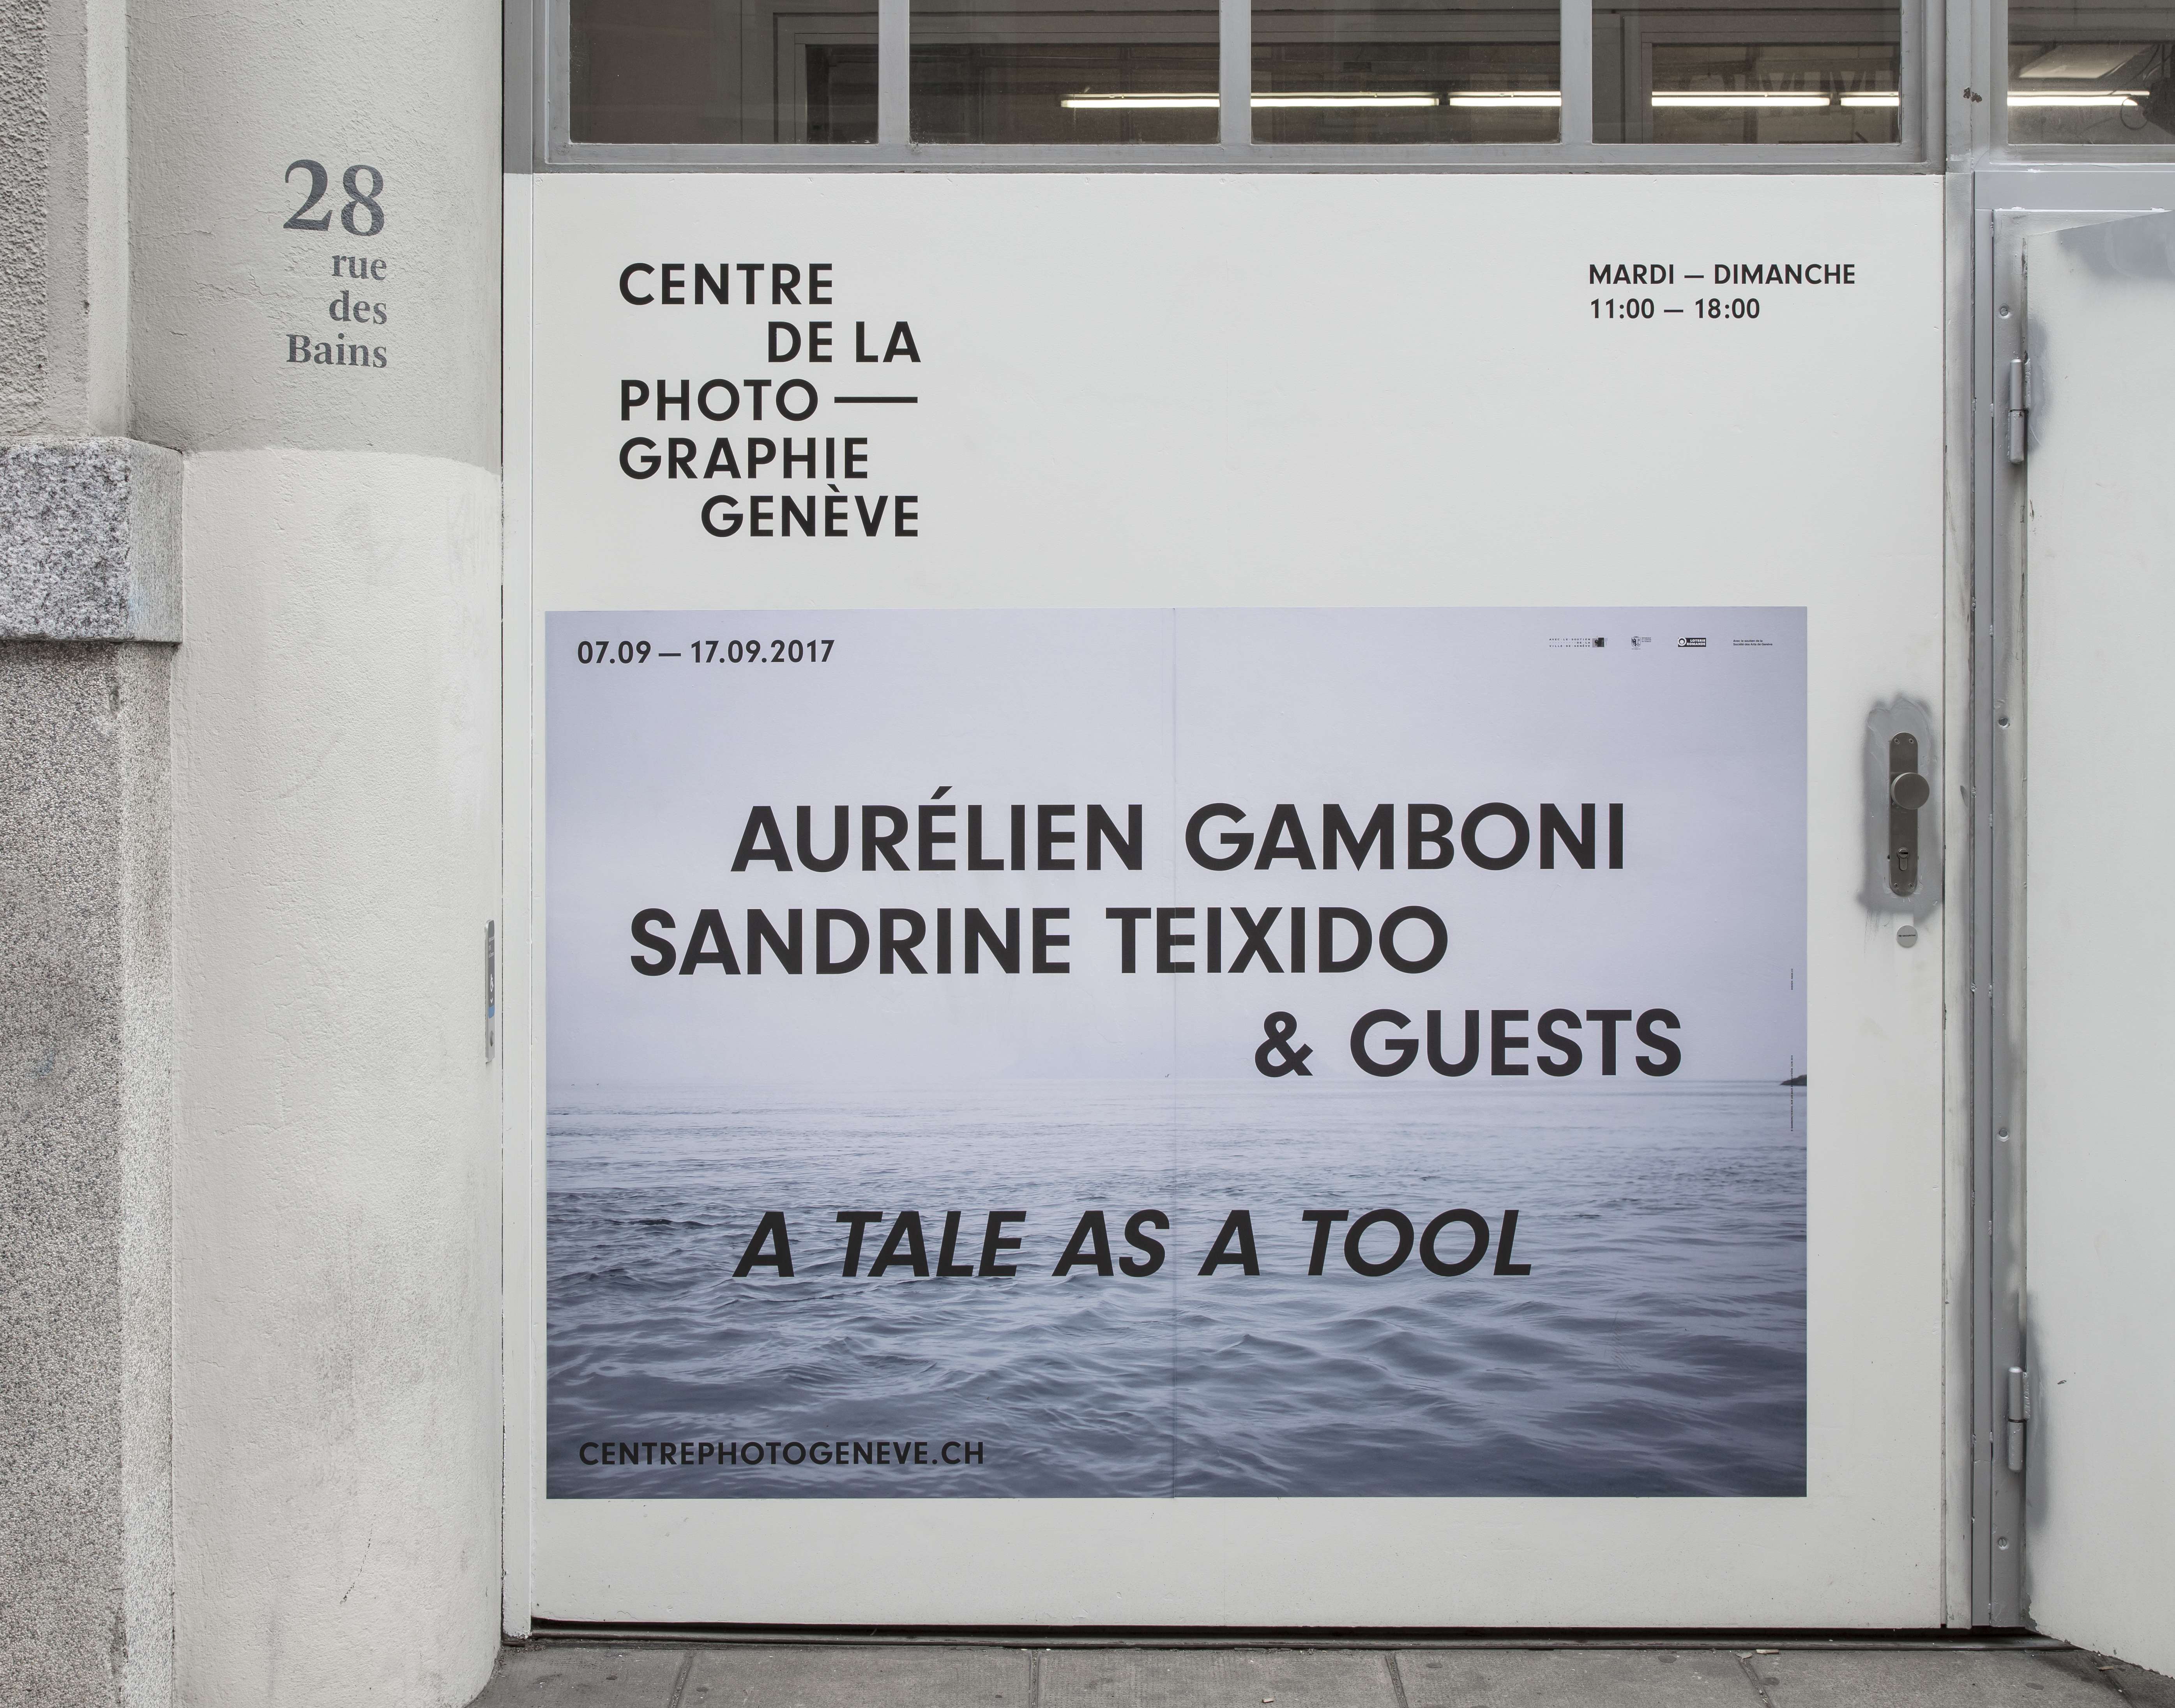 “A tale as a tool” au Centre de la Photographie